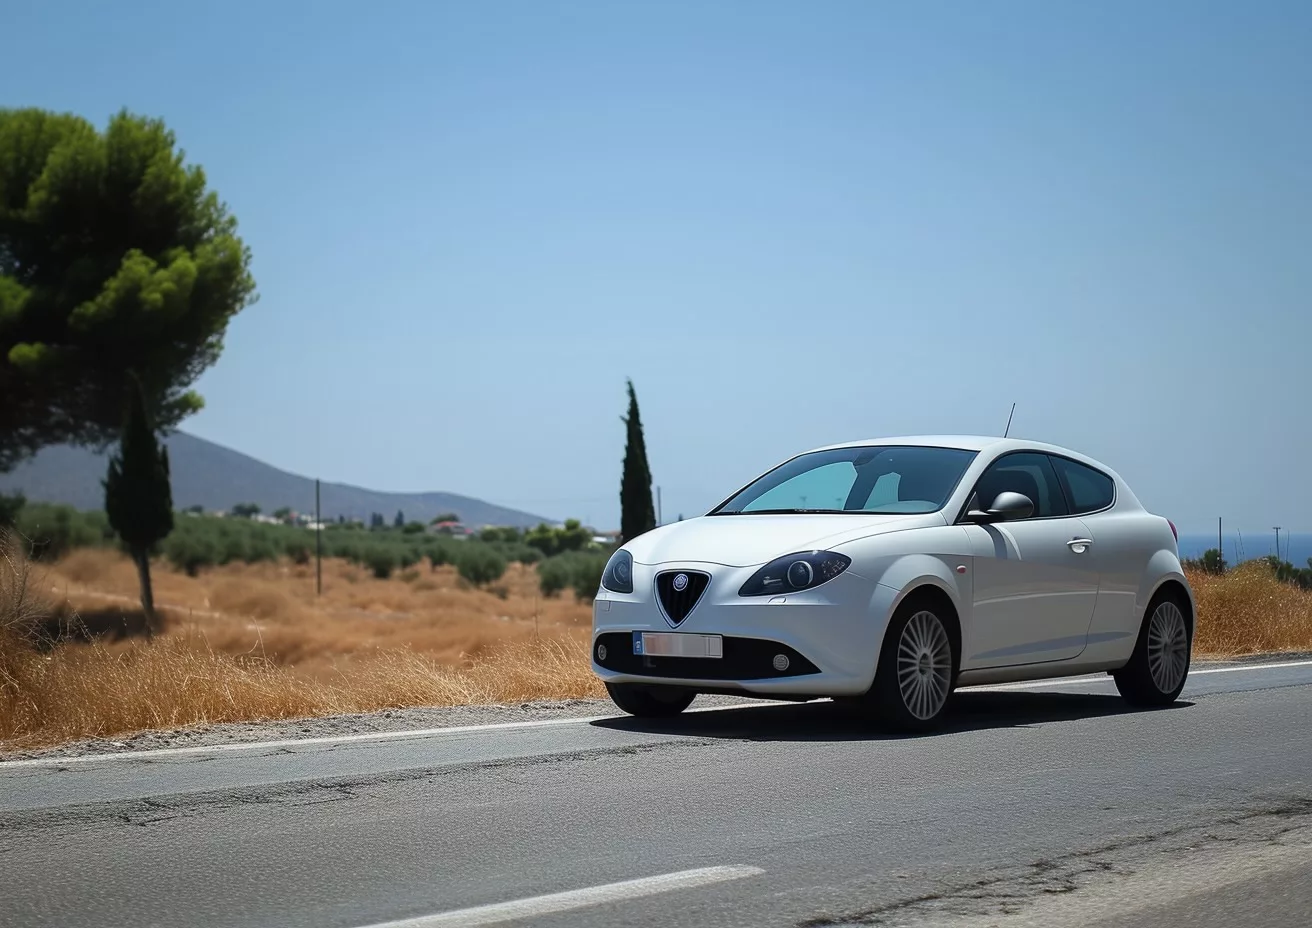 Louer une voiture en Crète : le guide complet